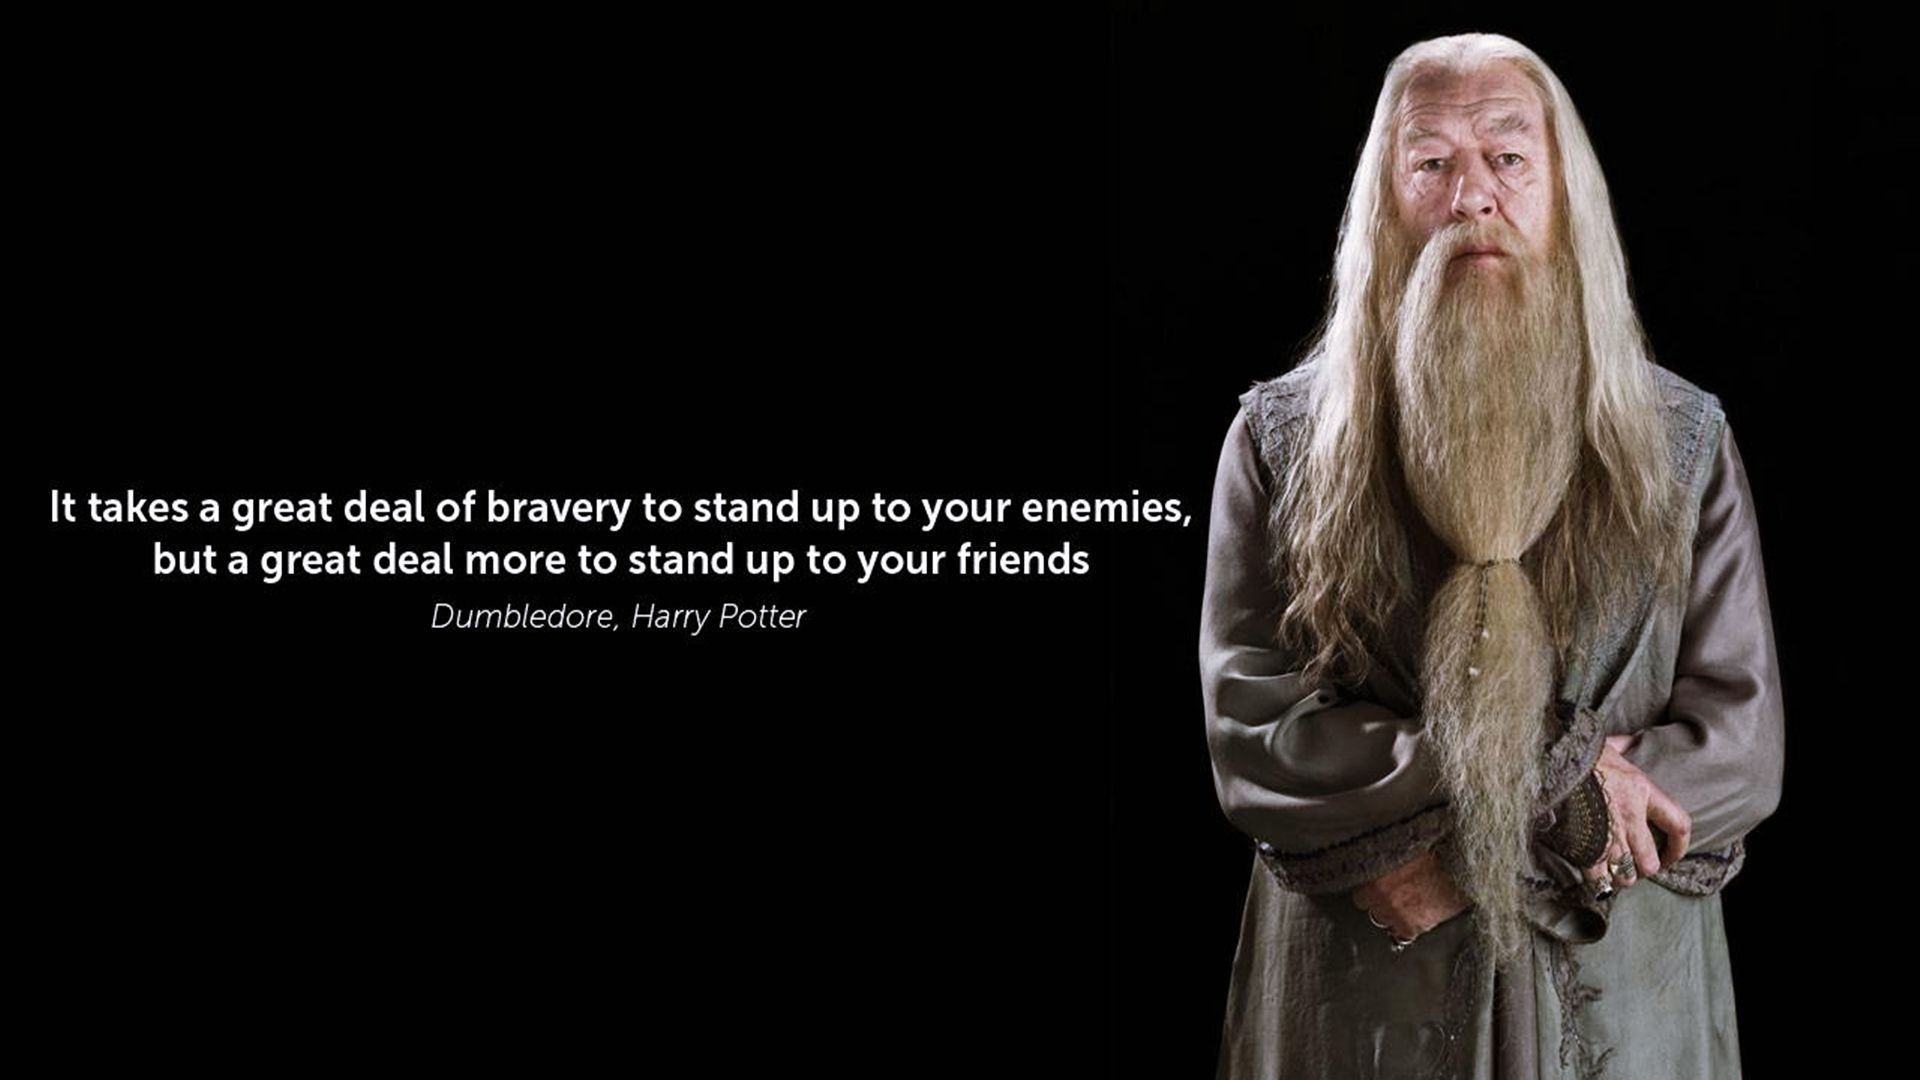 Dumbledore, Harry Potter Motivational Quotes Wallpaper 00778